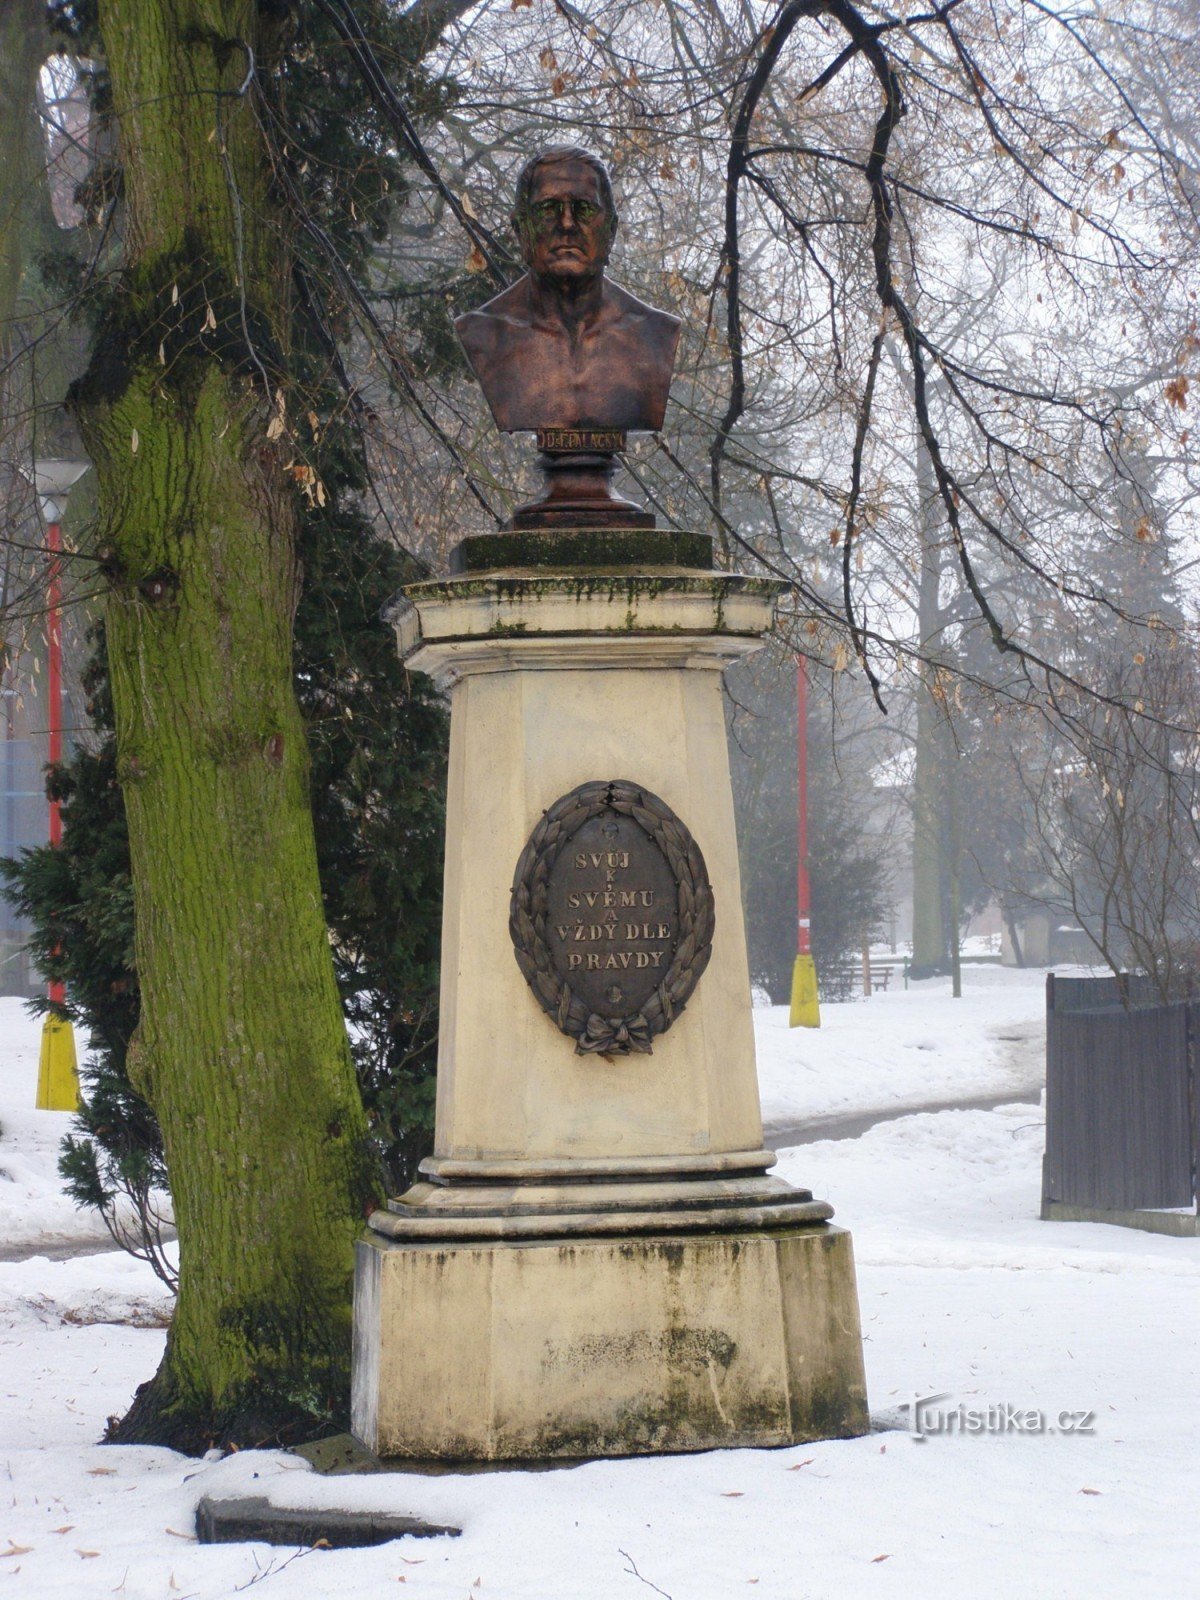 Nový Bydžov - monument over František Palacký